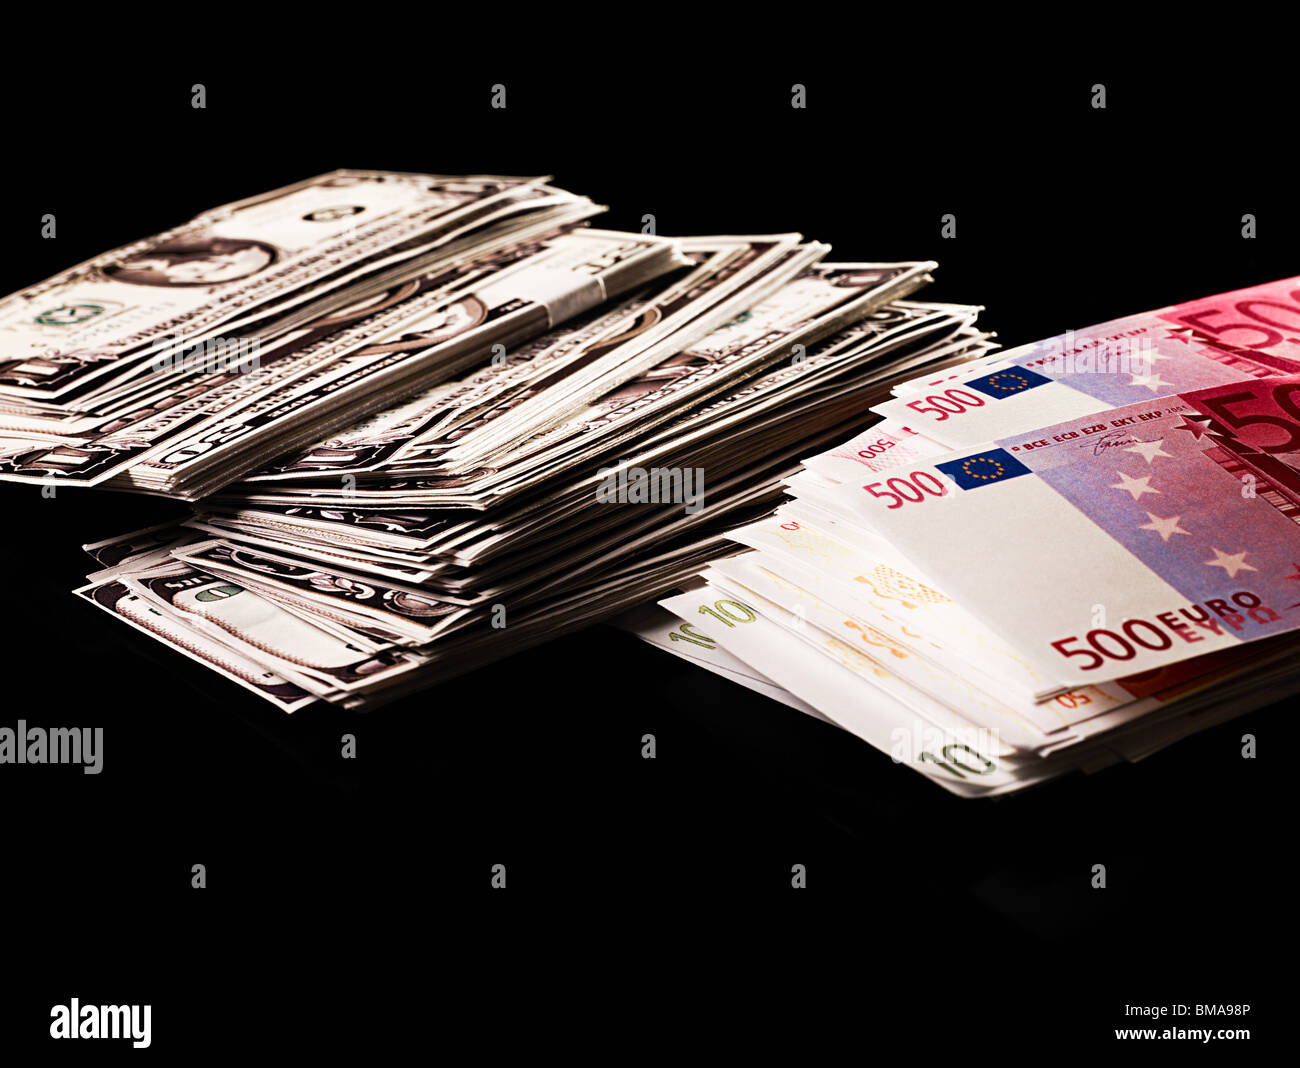 Des piles de dollars et de billets en euros Banque D'Images